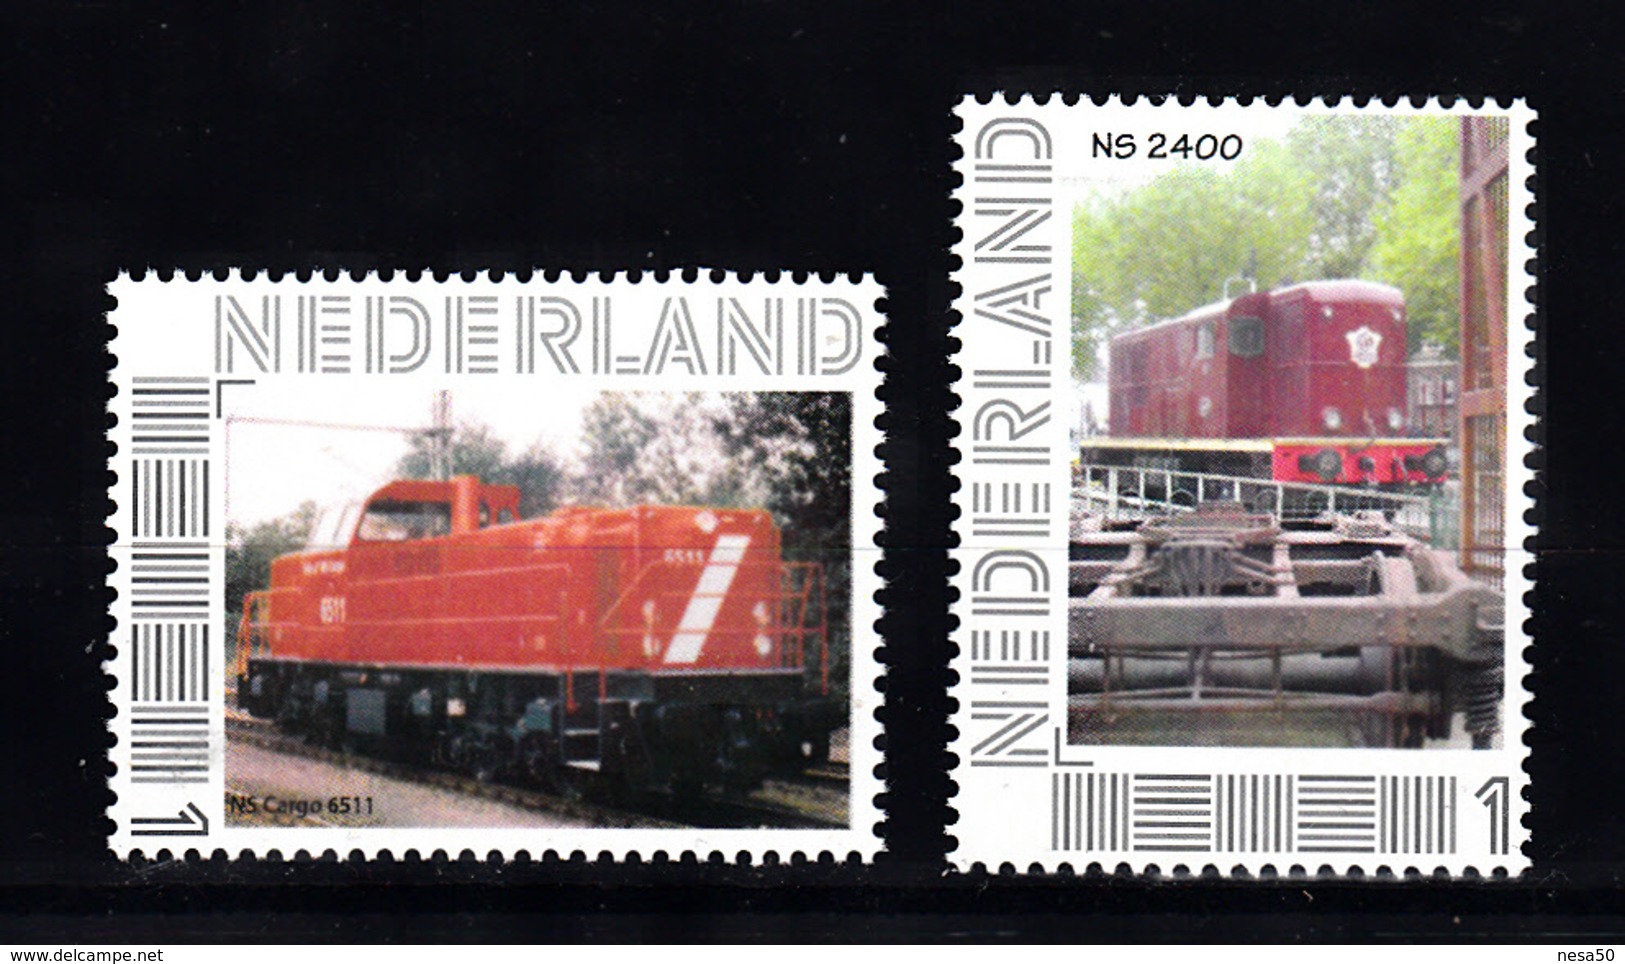 Trein, Train, Locomotive, Railway: Persoonlijke Zegel: NS Cargo 6511 + NS 2400 - Treinen